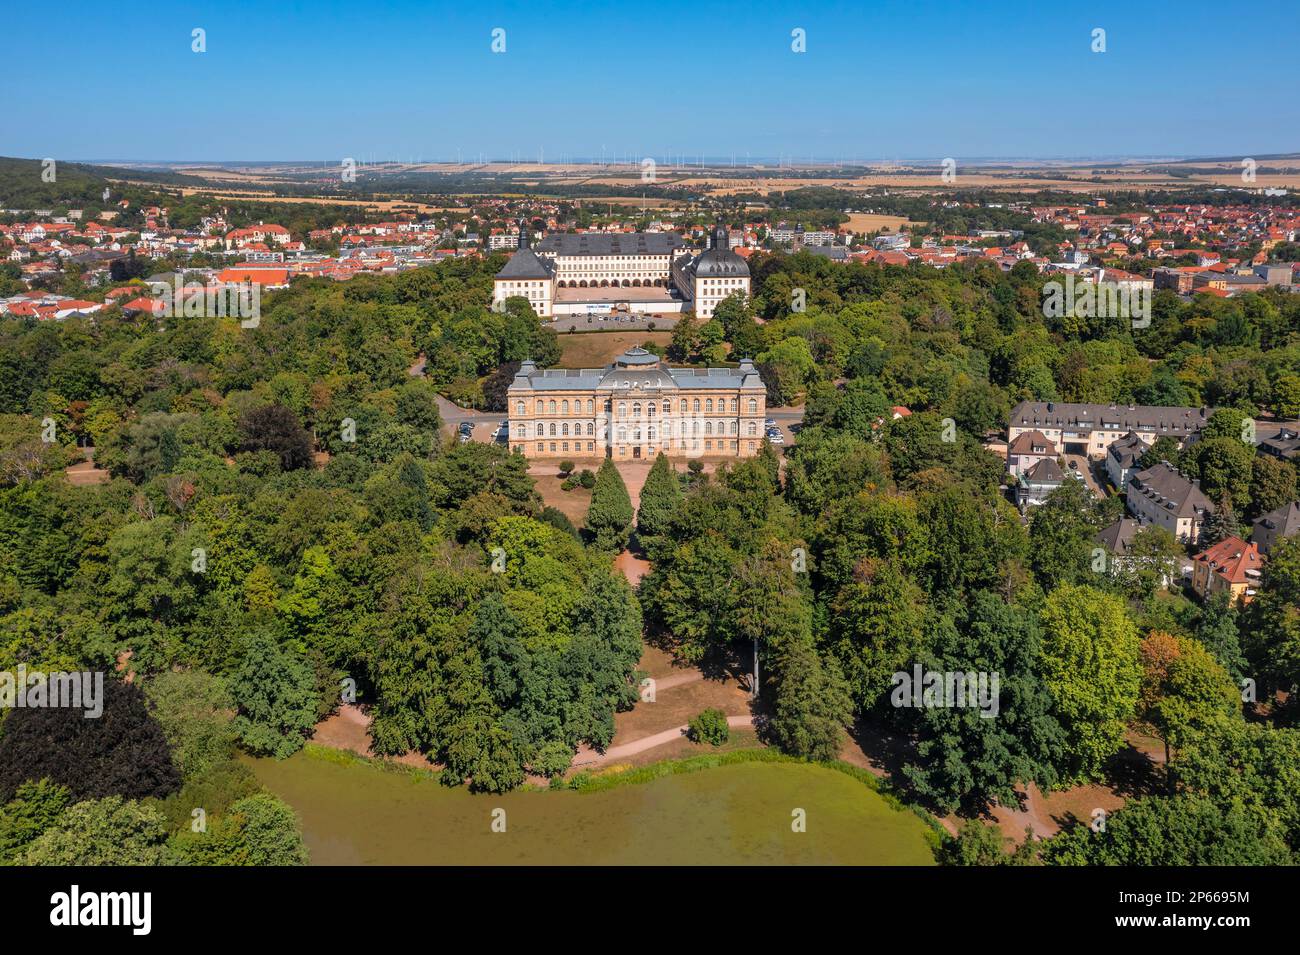 Englischer Garten, Herzogsmuseum mit Schloss Friedenstein im Hintergrund, Gotha, Thüringer Becken, Thüringen, Deutschland, Europa Stockfoto